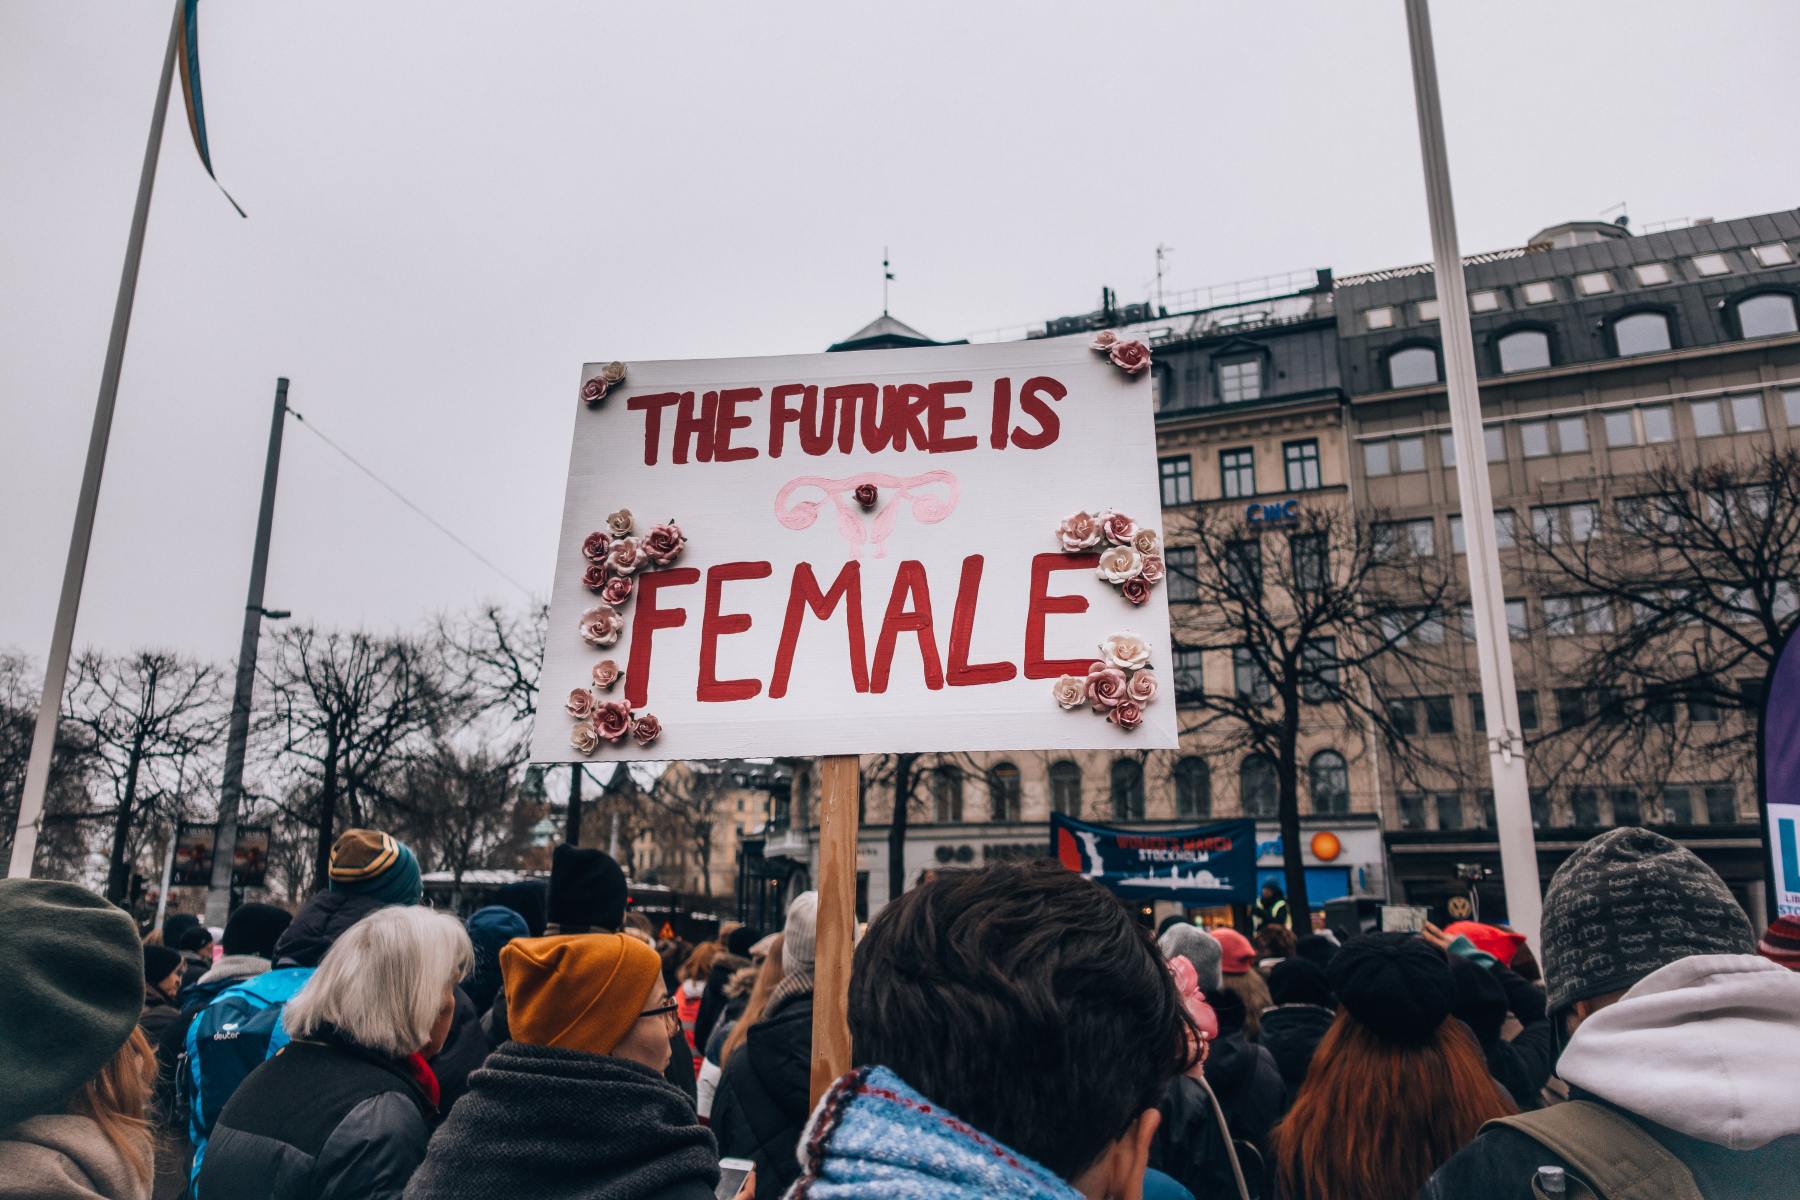 Pancarte "The future is female" lors d'une manisfestion écoféministe contre les inégalités de genre.